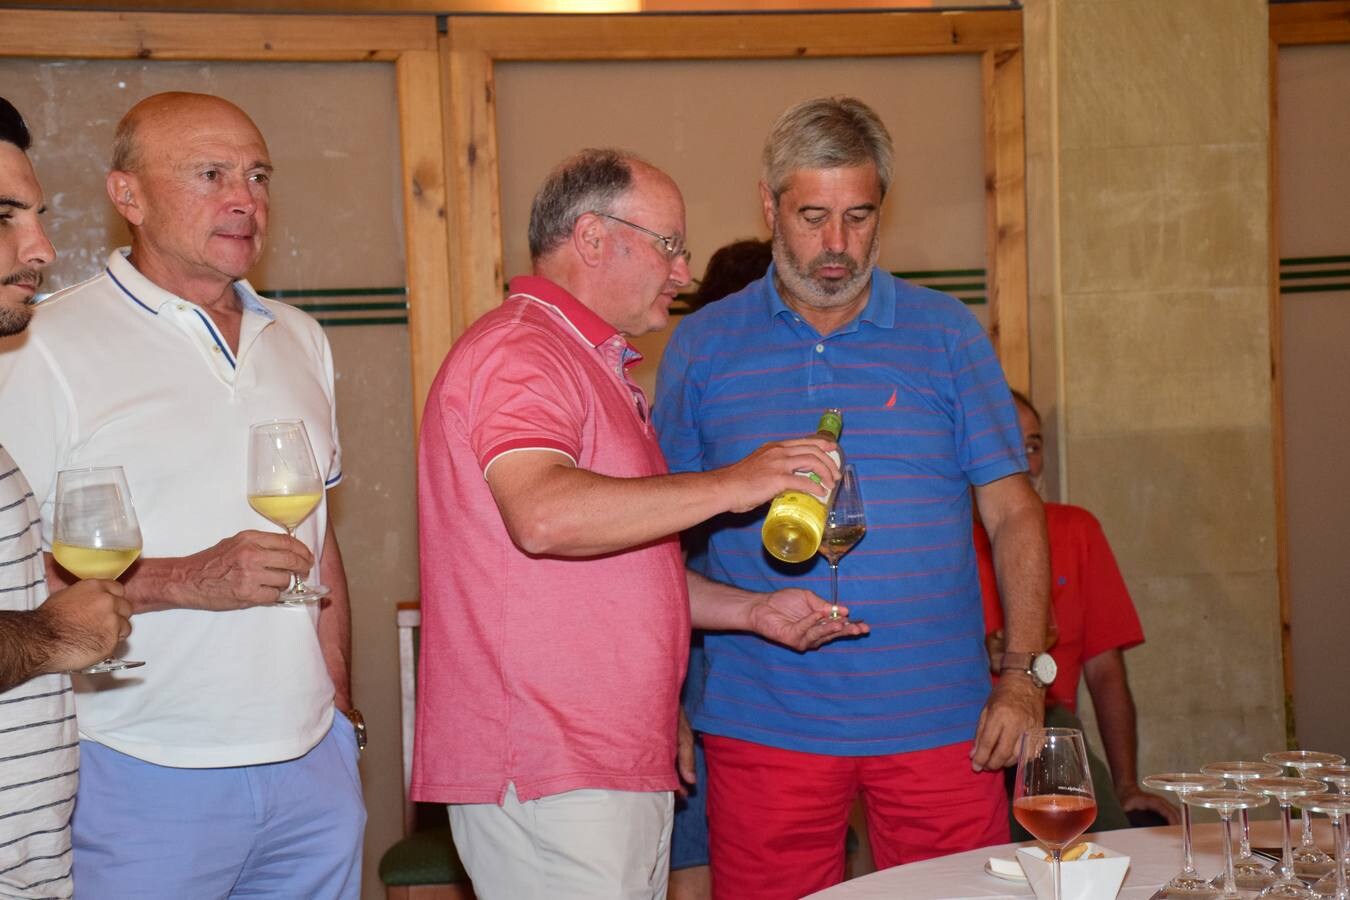 Tras la jornada de juego, se pudo disfrutar de la cata de dos vinos de Bodegas Marqués de Riscal.